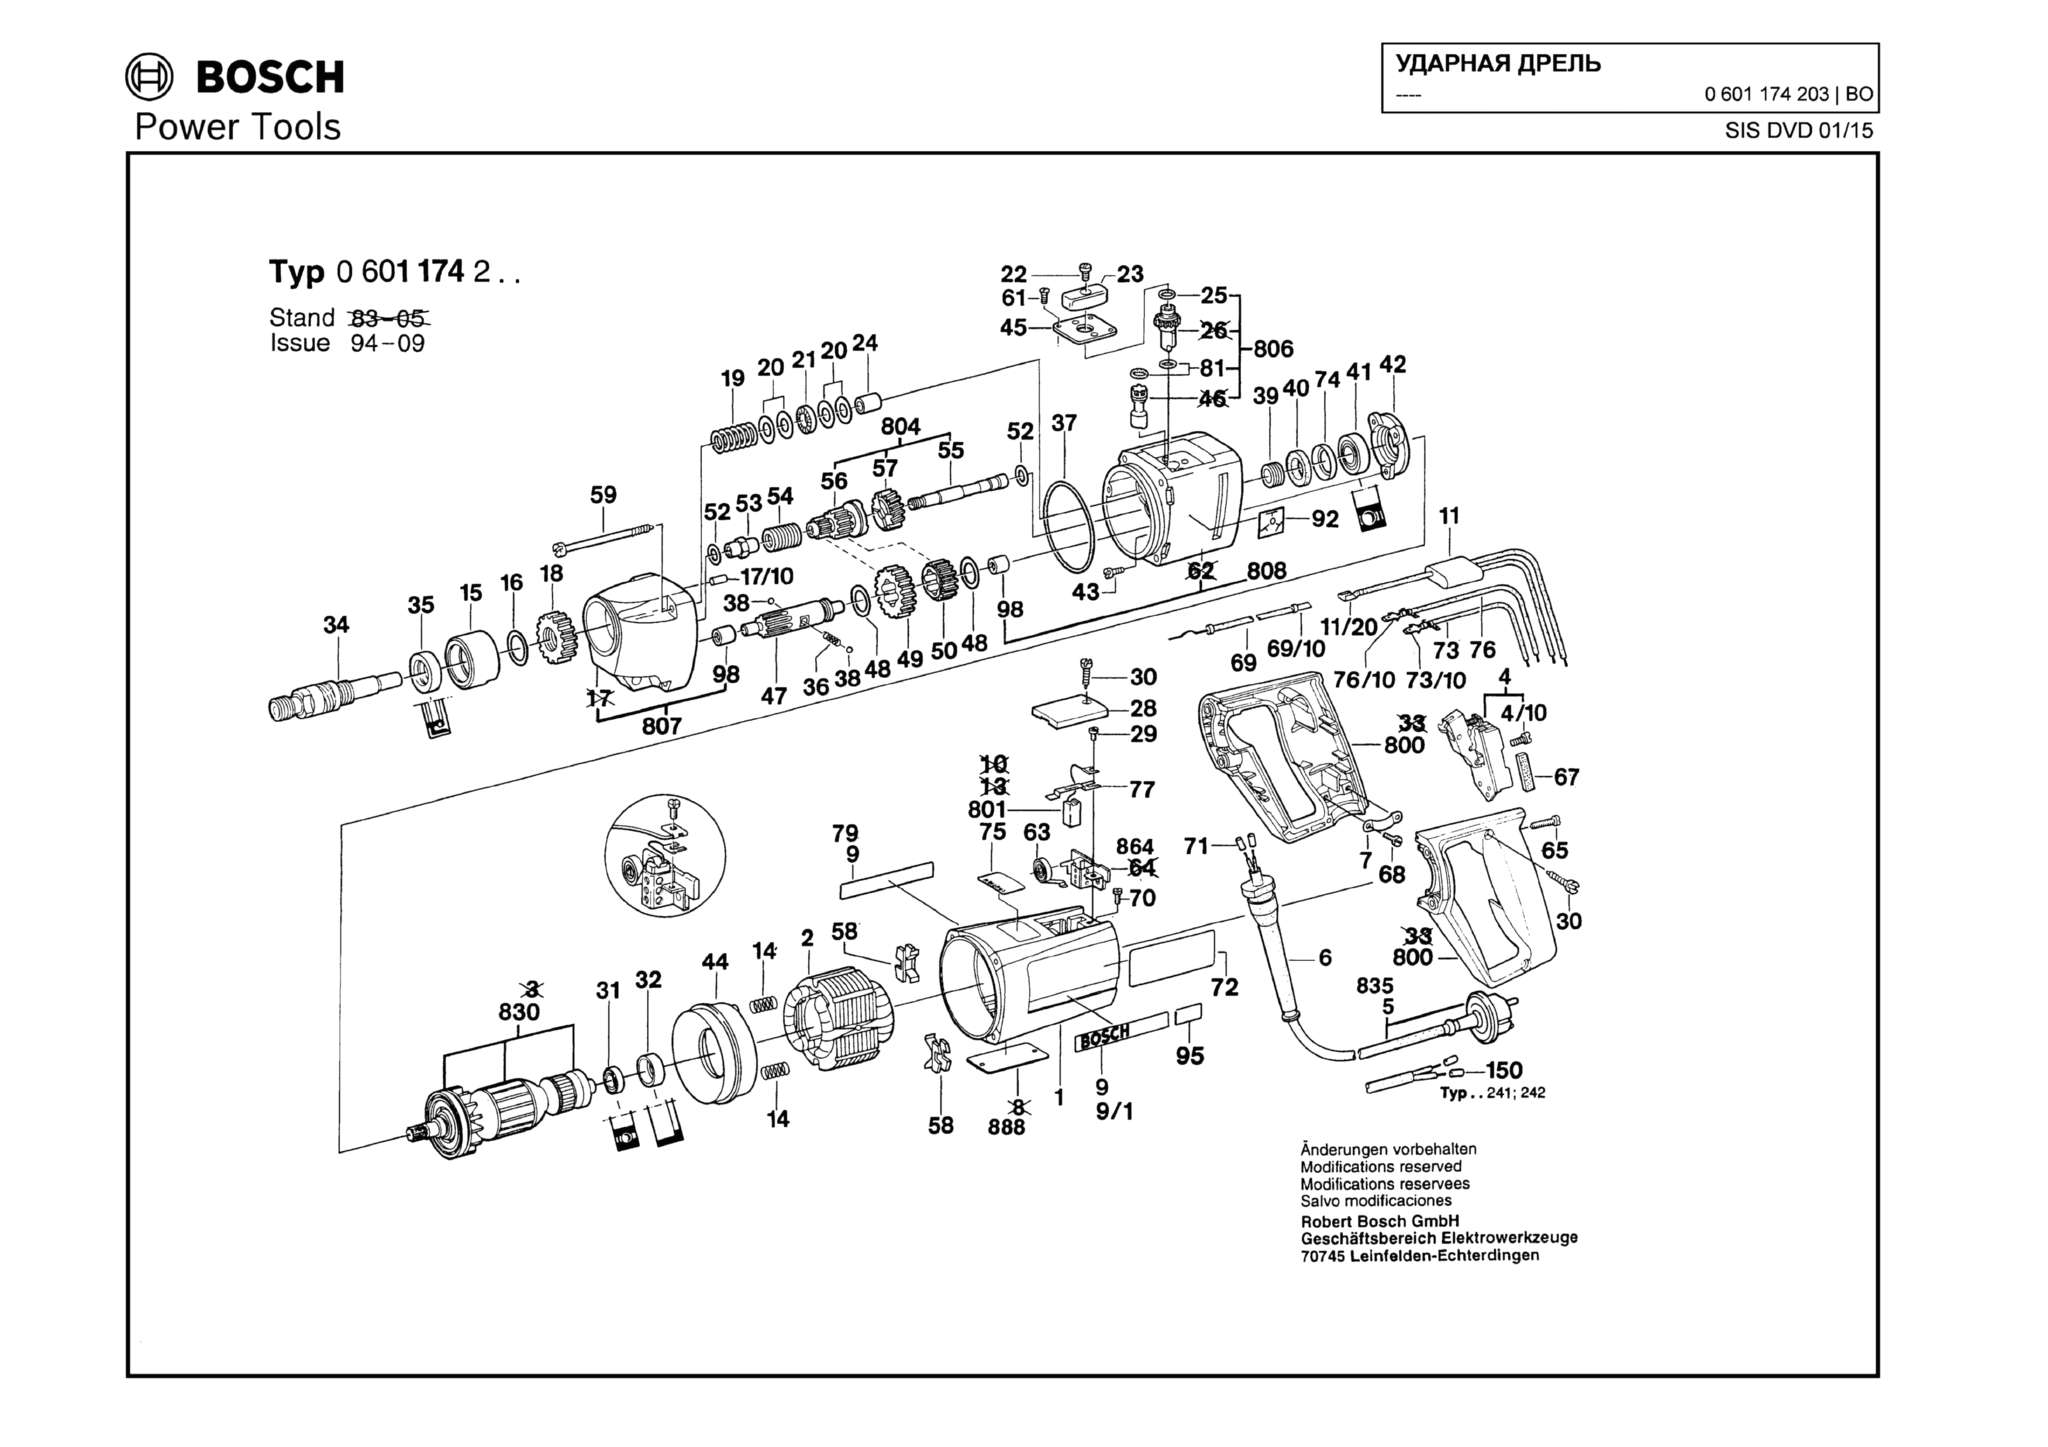 Запчасти, схема и деталировка Bosch (ТИП 0601174203)